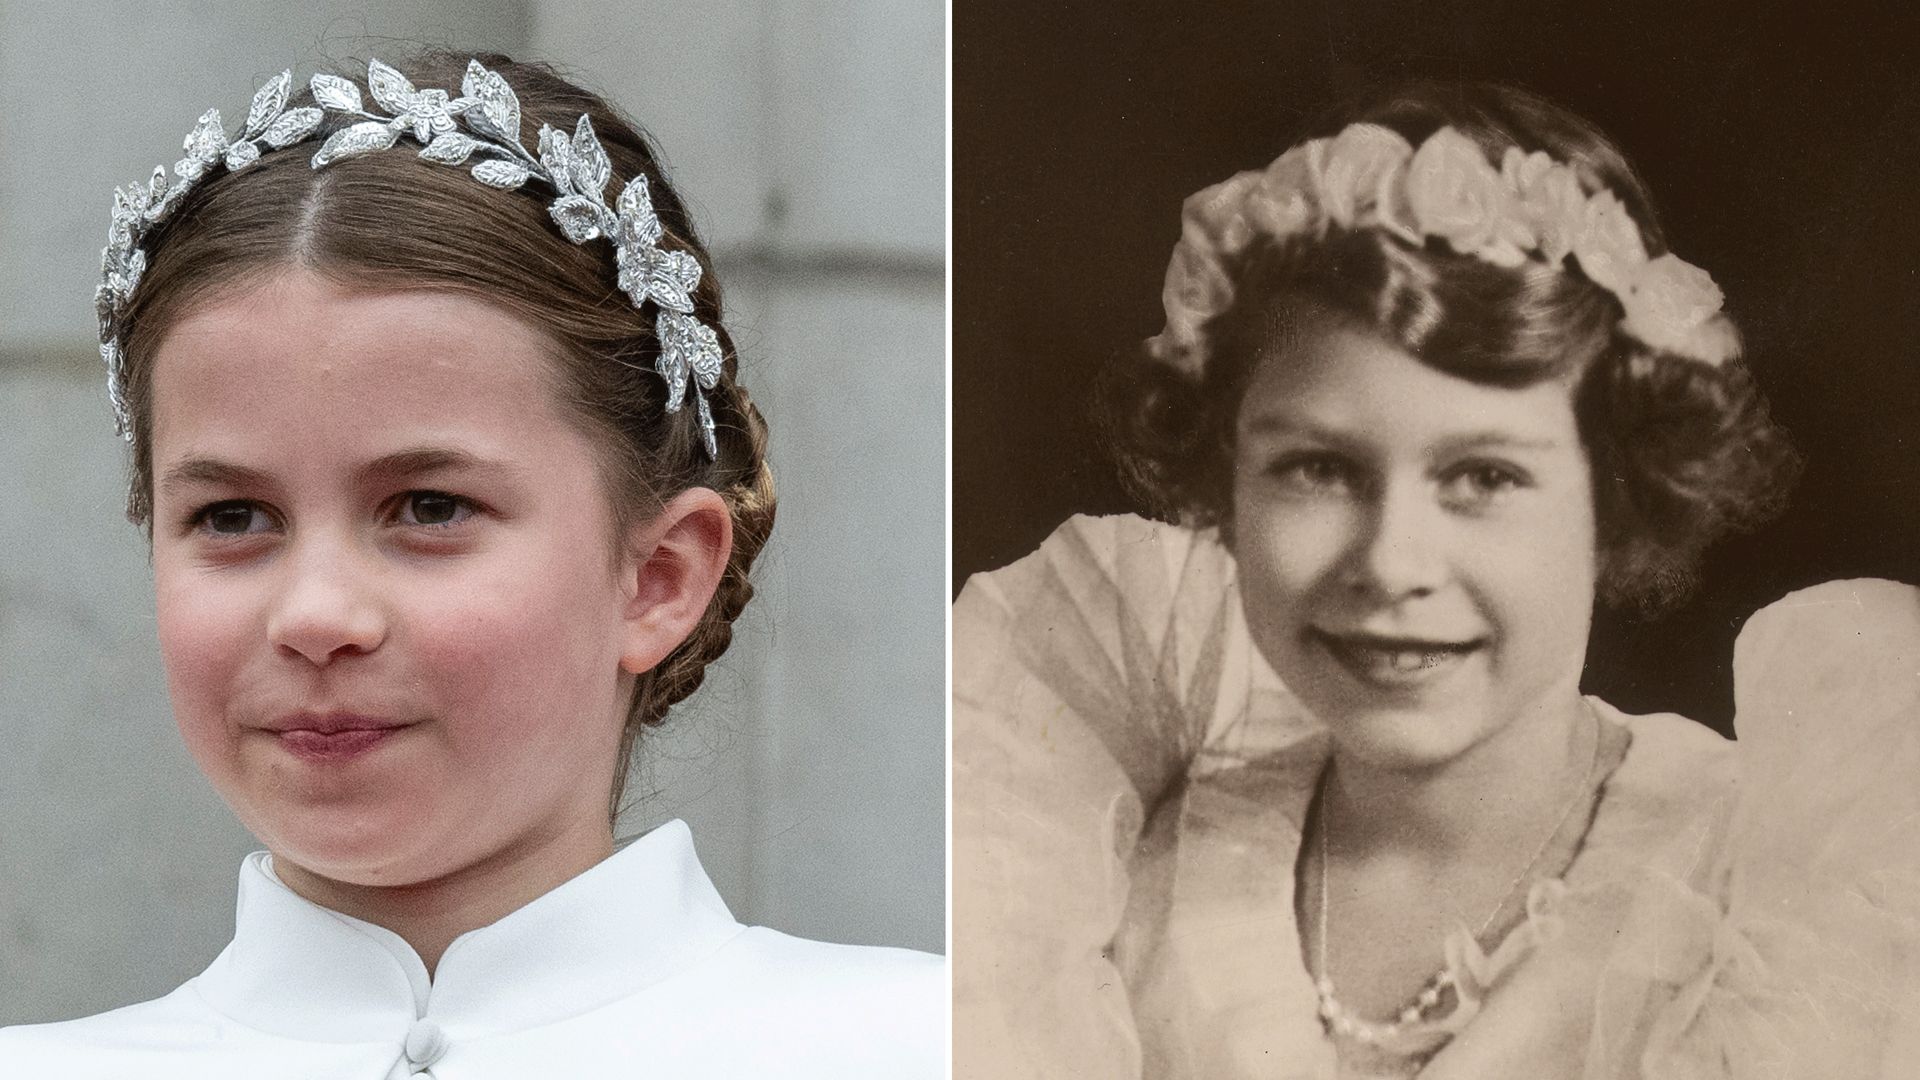 Princess Charlotte resembles a young Queen Elizabeth II